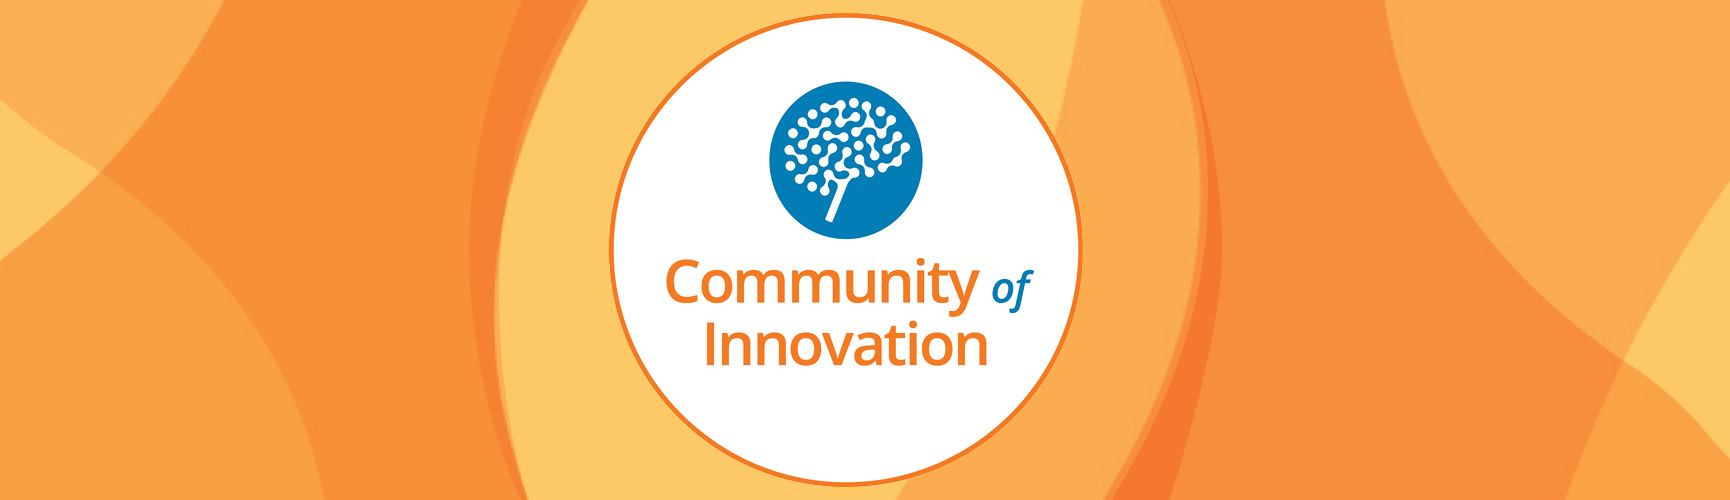 CABHI's Community of Innovation podcast logo surrounded by orange swirls